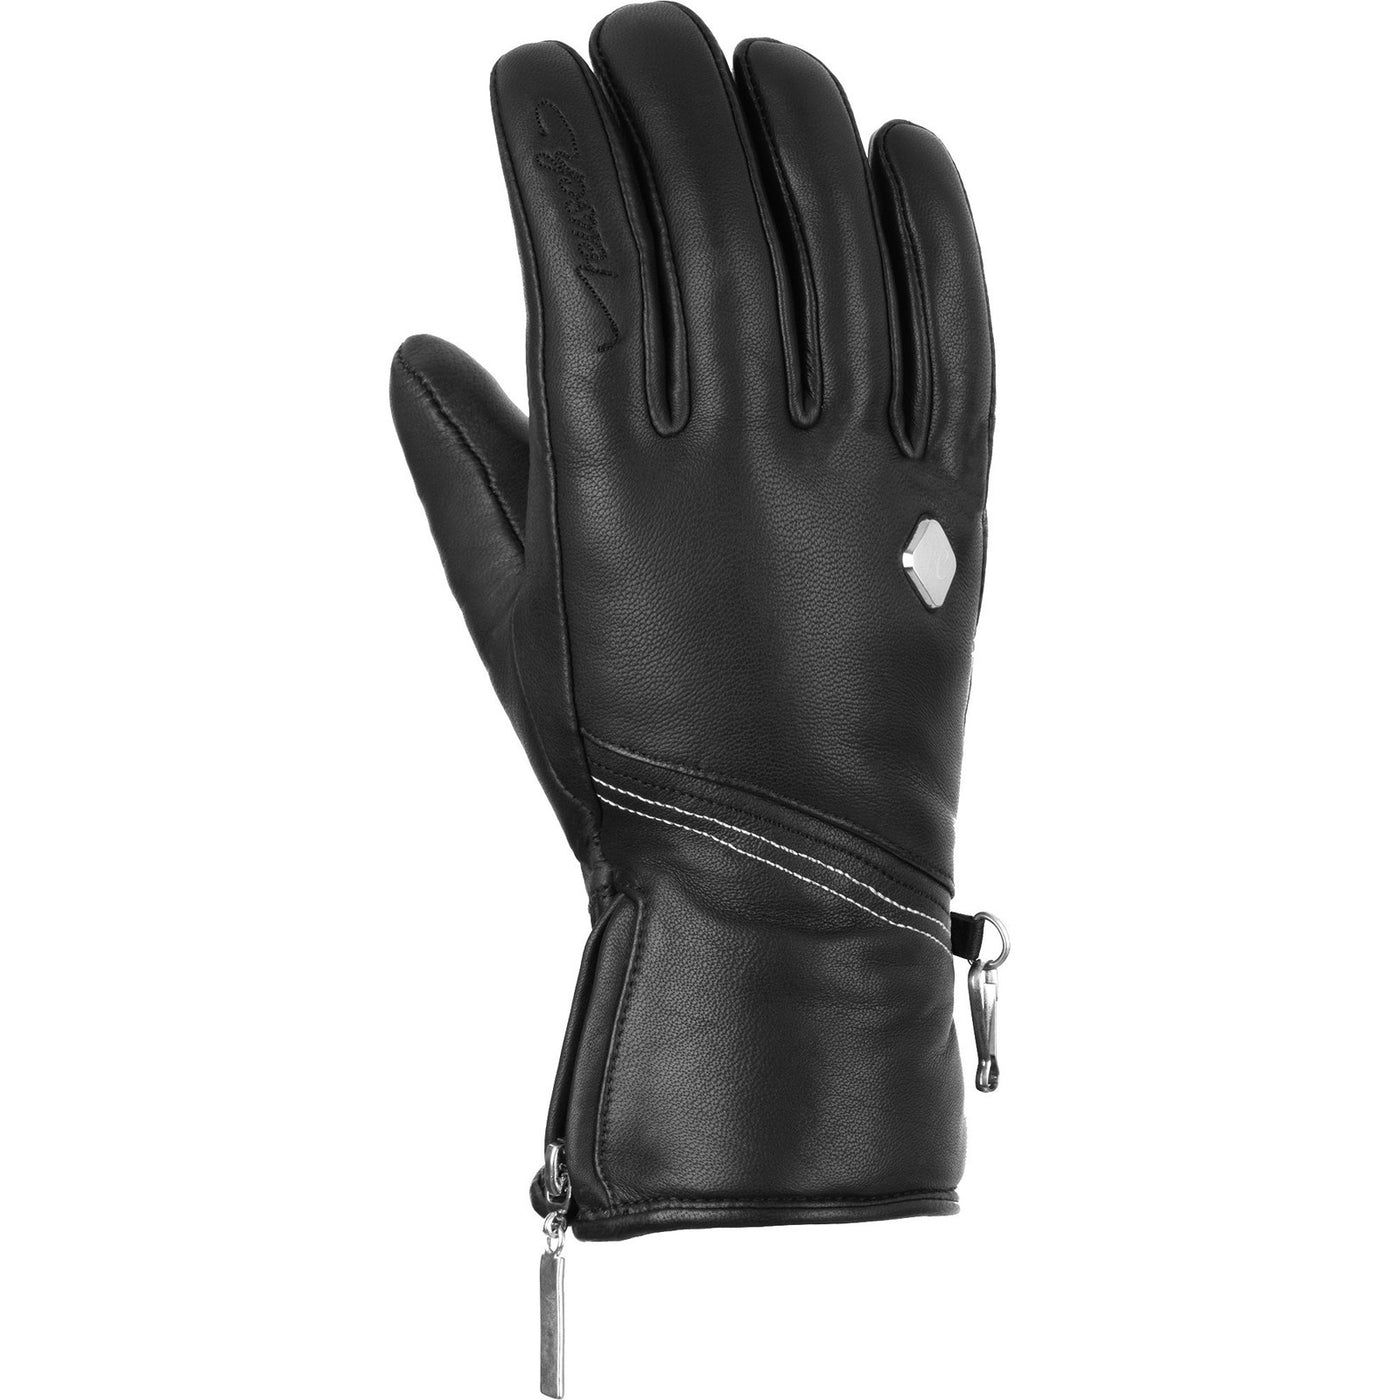 Reusch Camila Full Leather Ladies Glove SnowKids SnowKids 